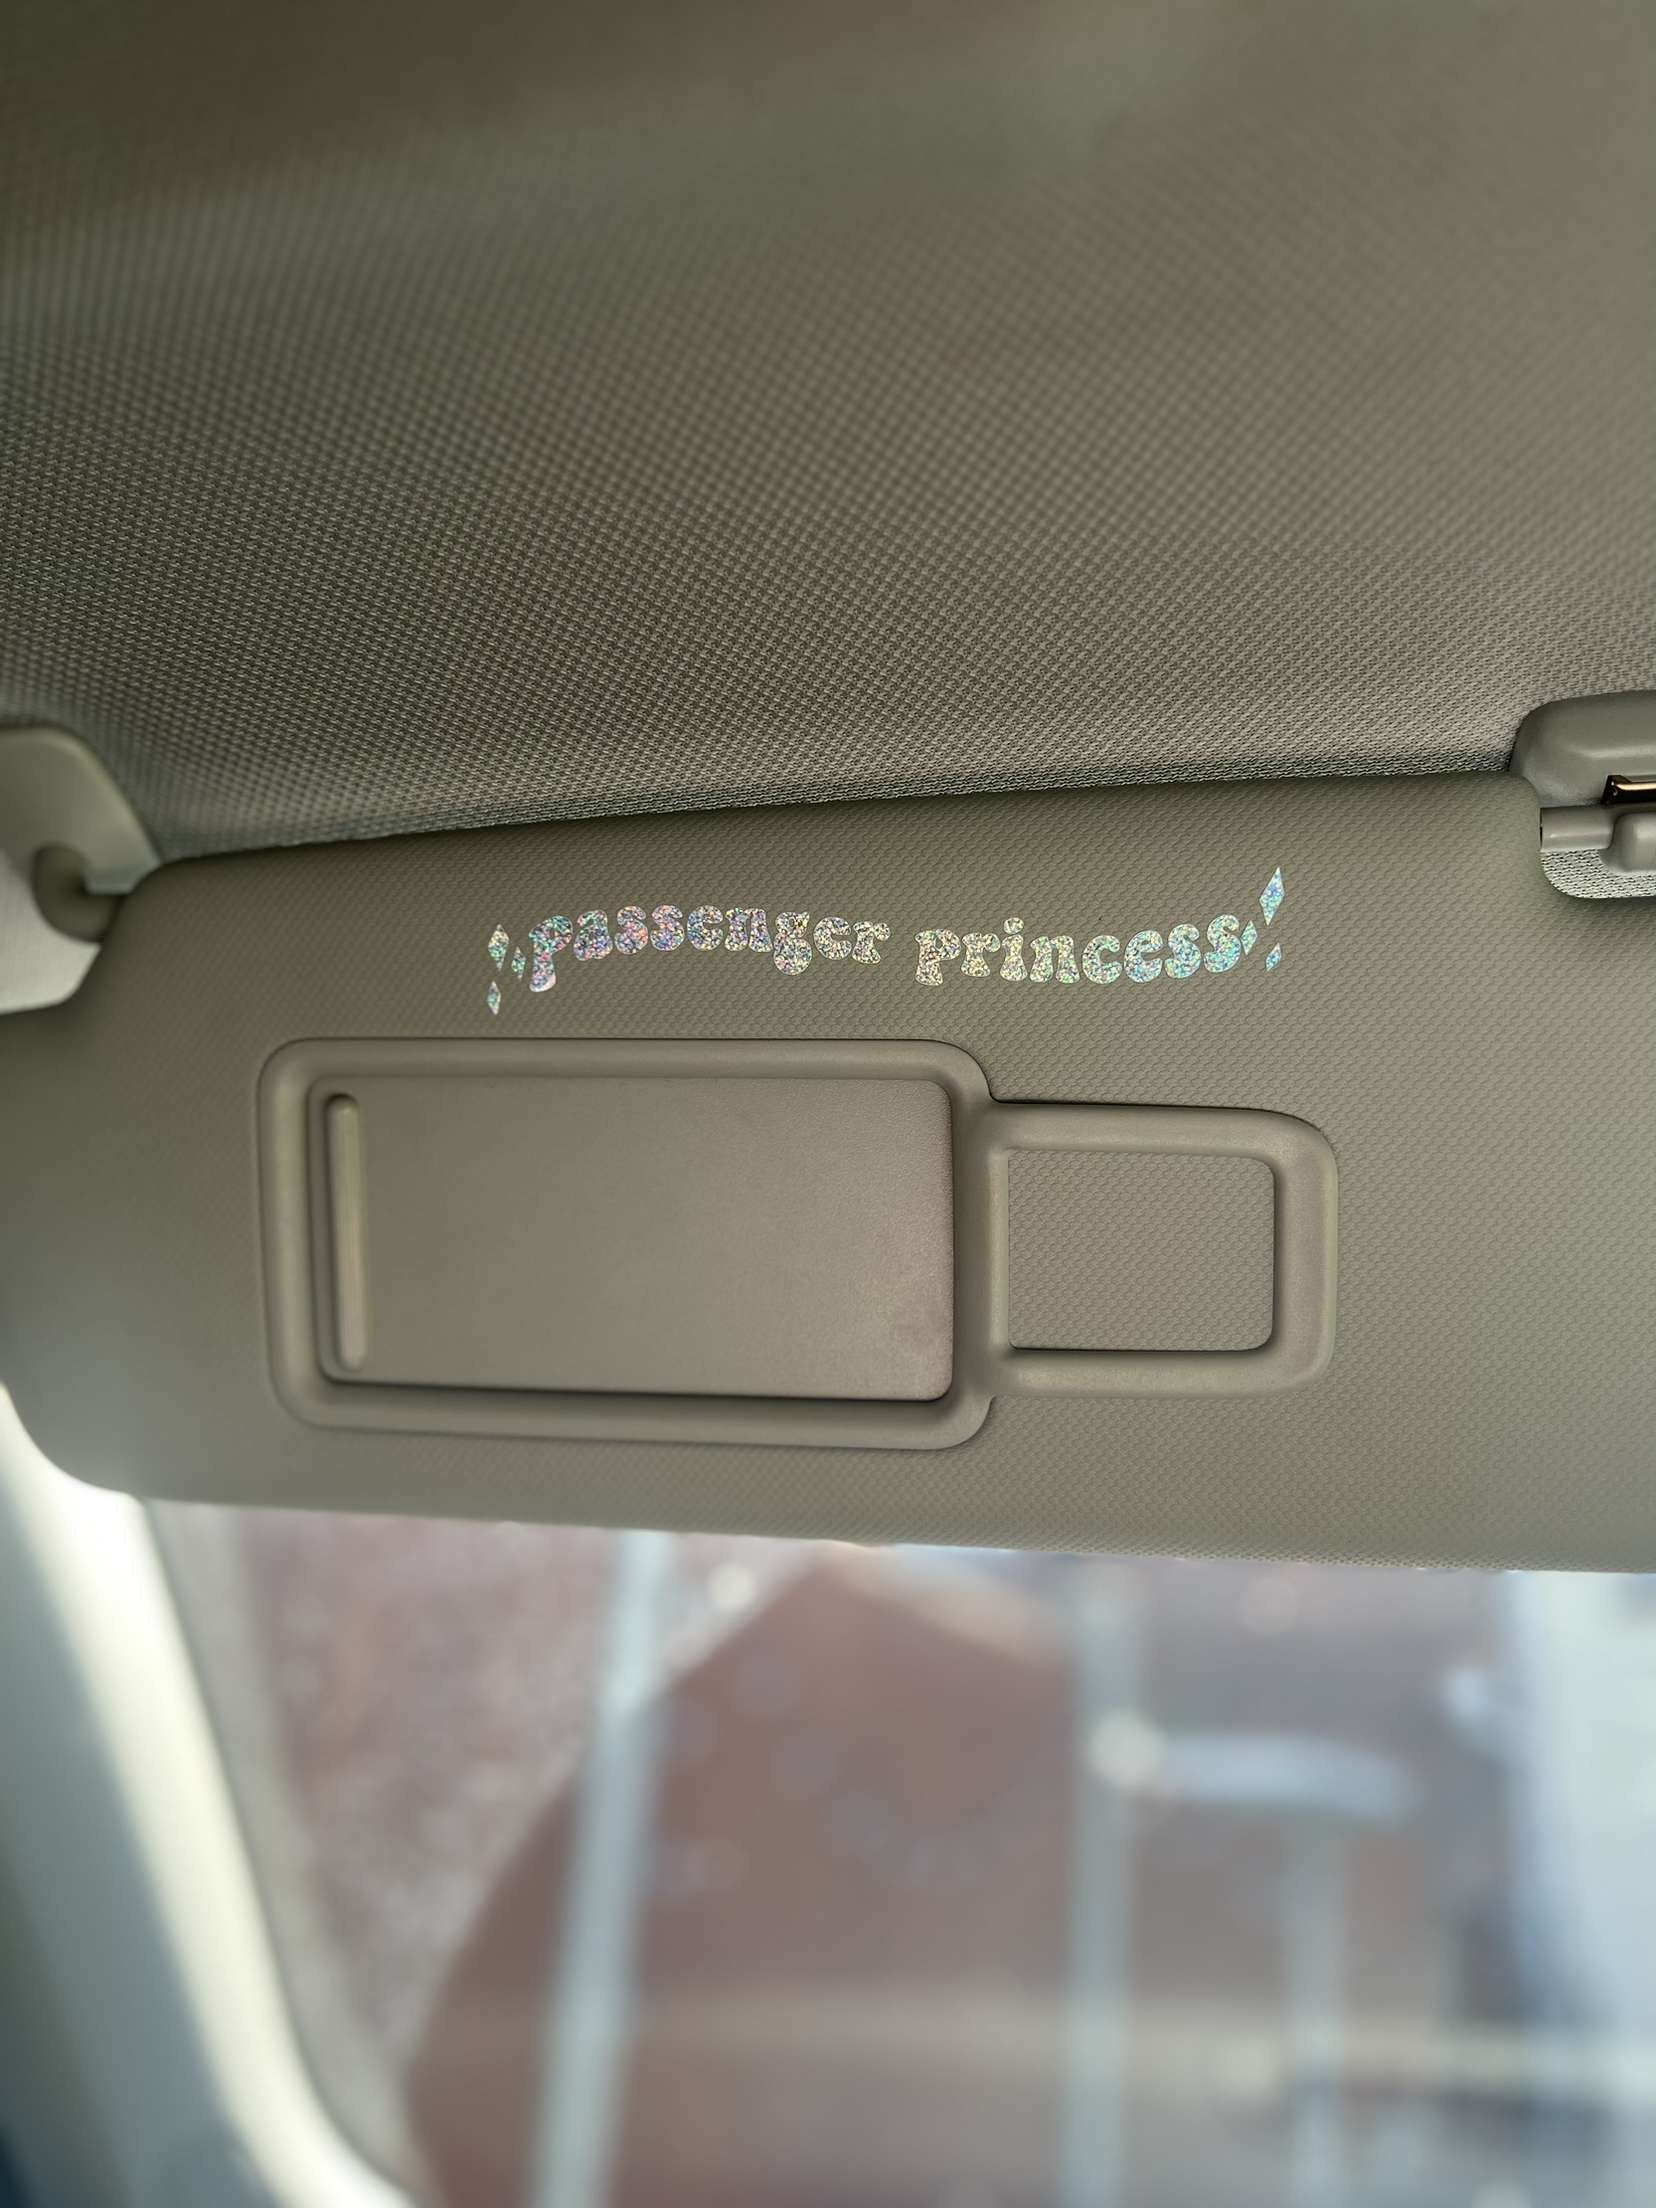 Passenger princess sticker – droppedautos